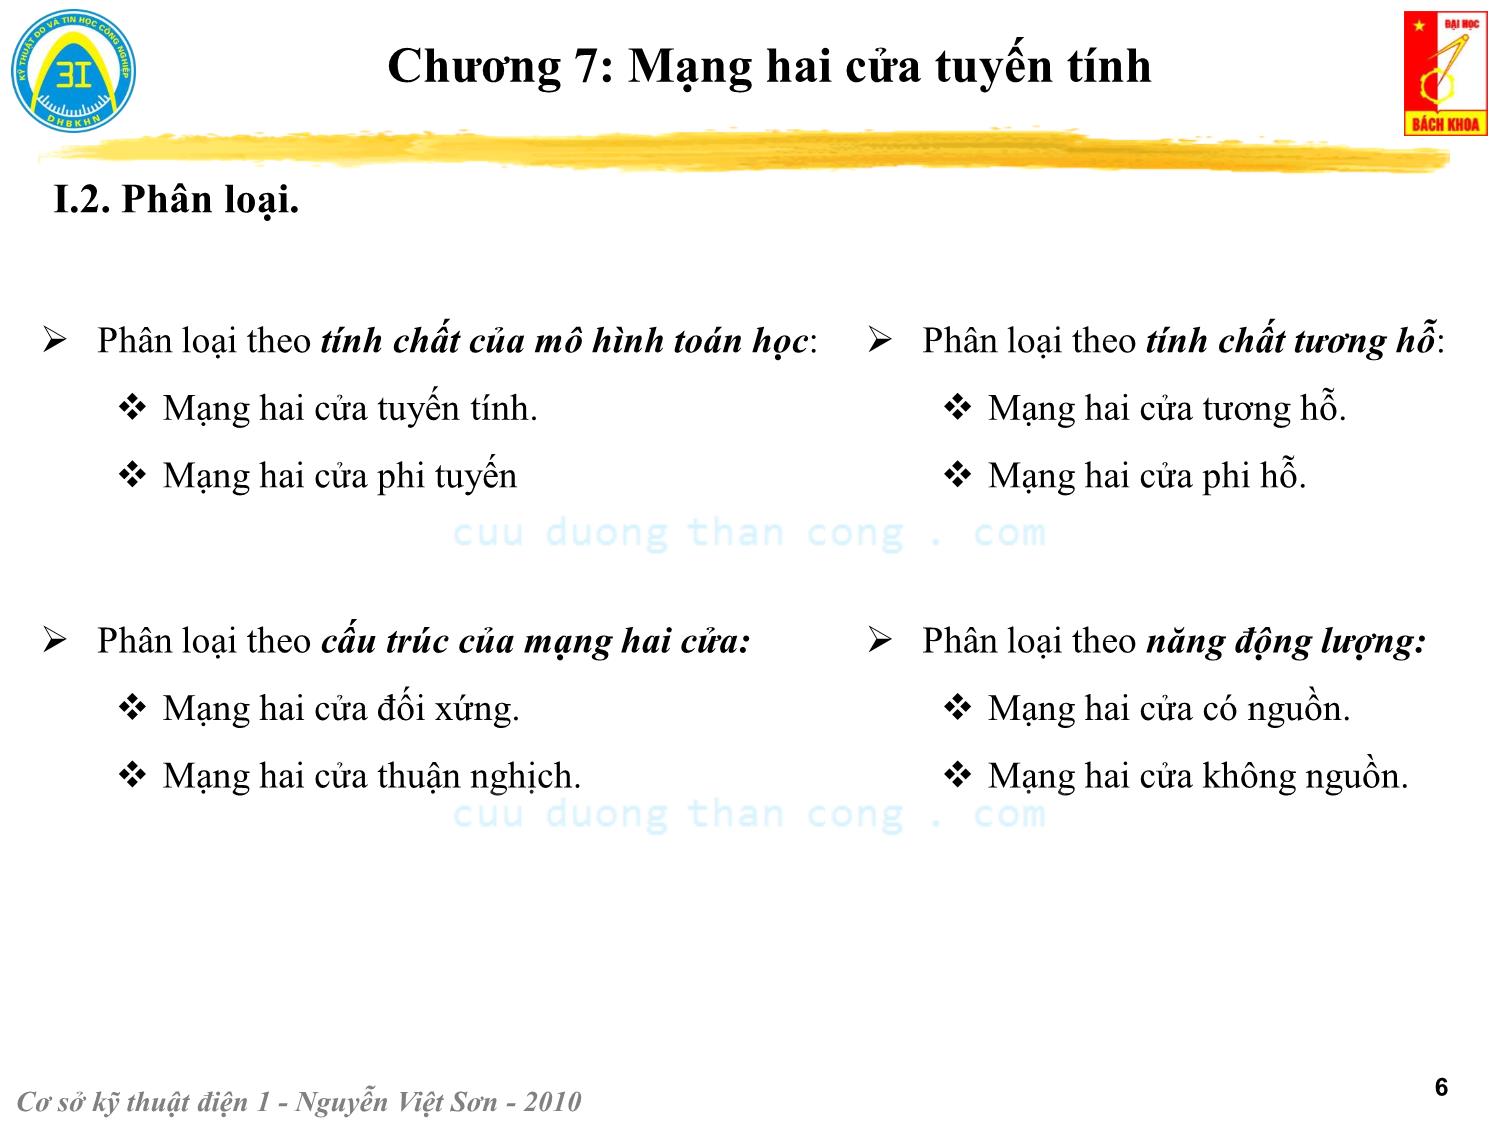 Bài giảng Kỹ thuật điện 1 - Chương 7: Mạng hai cửa tuyến tính - Nguyễn Việt Sơn trang 6